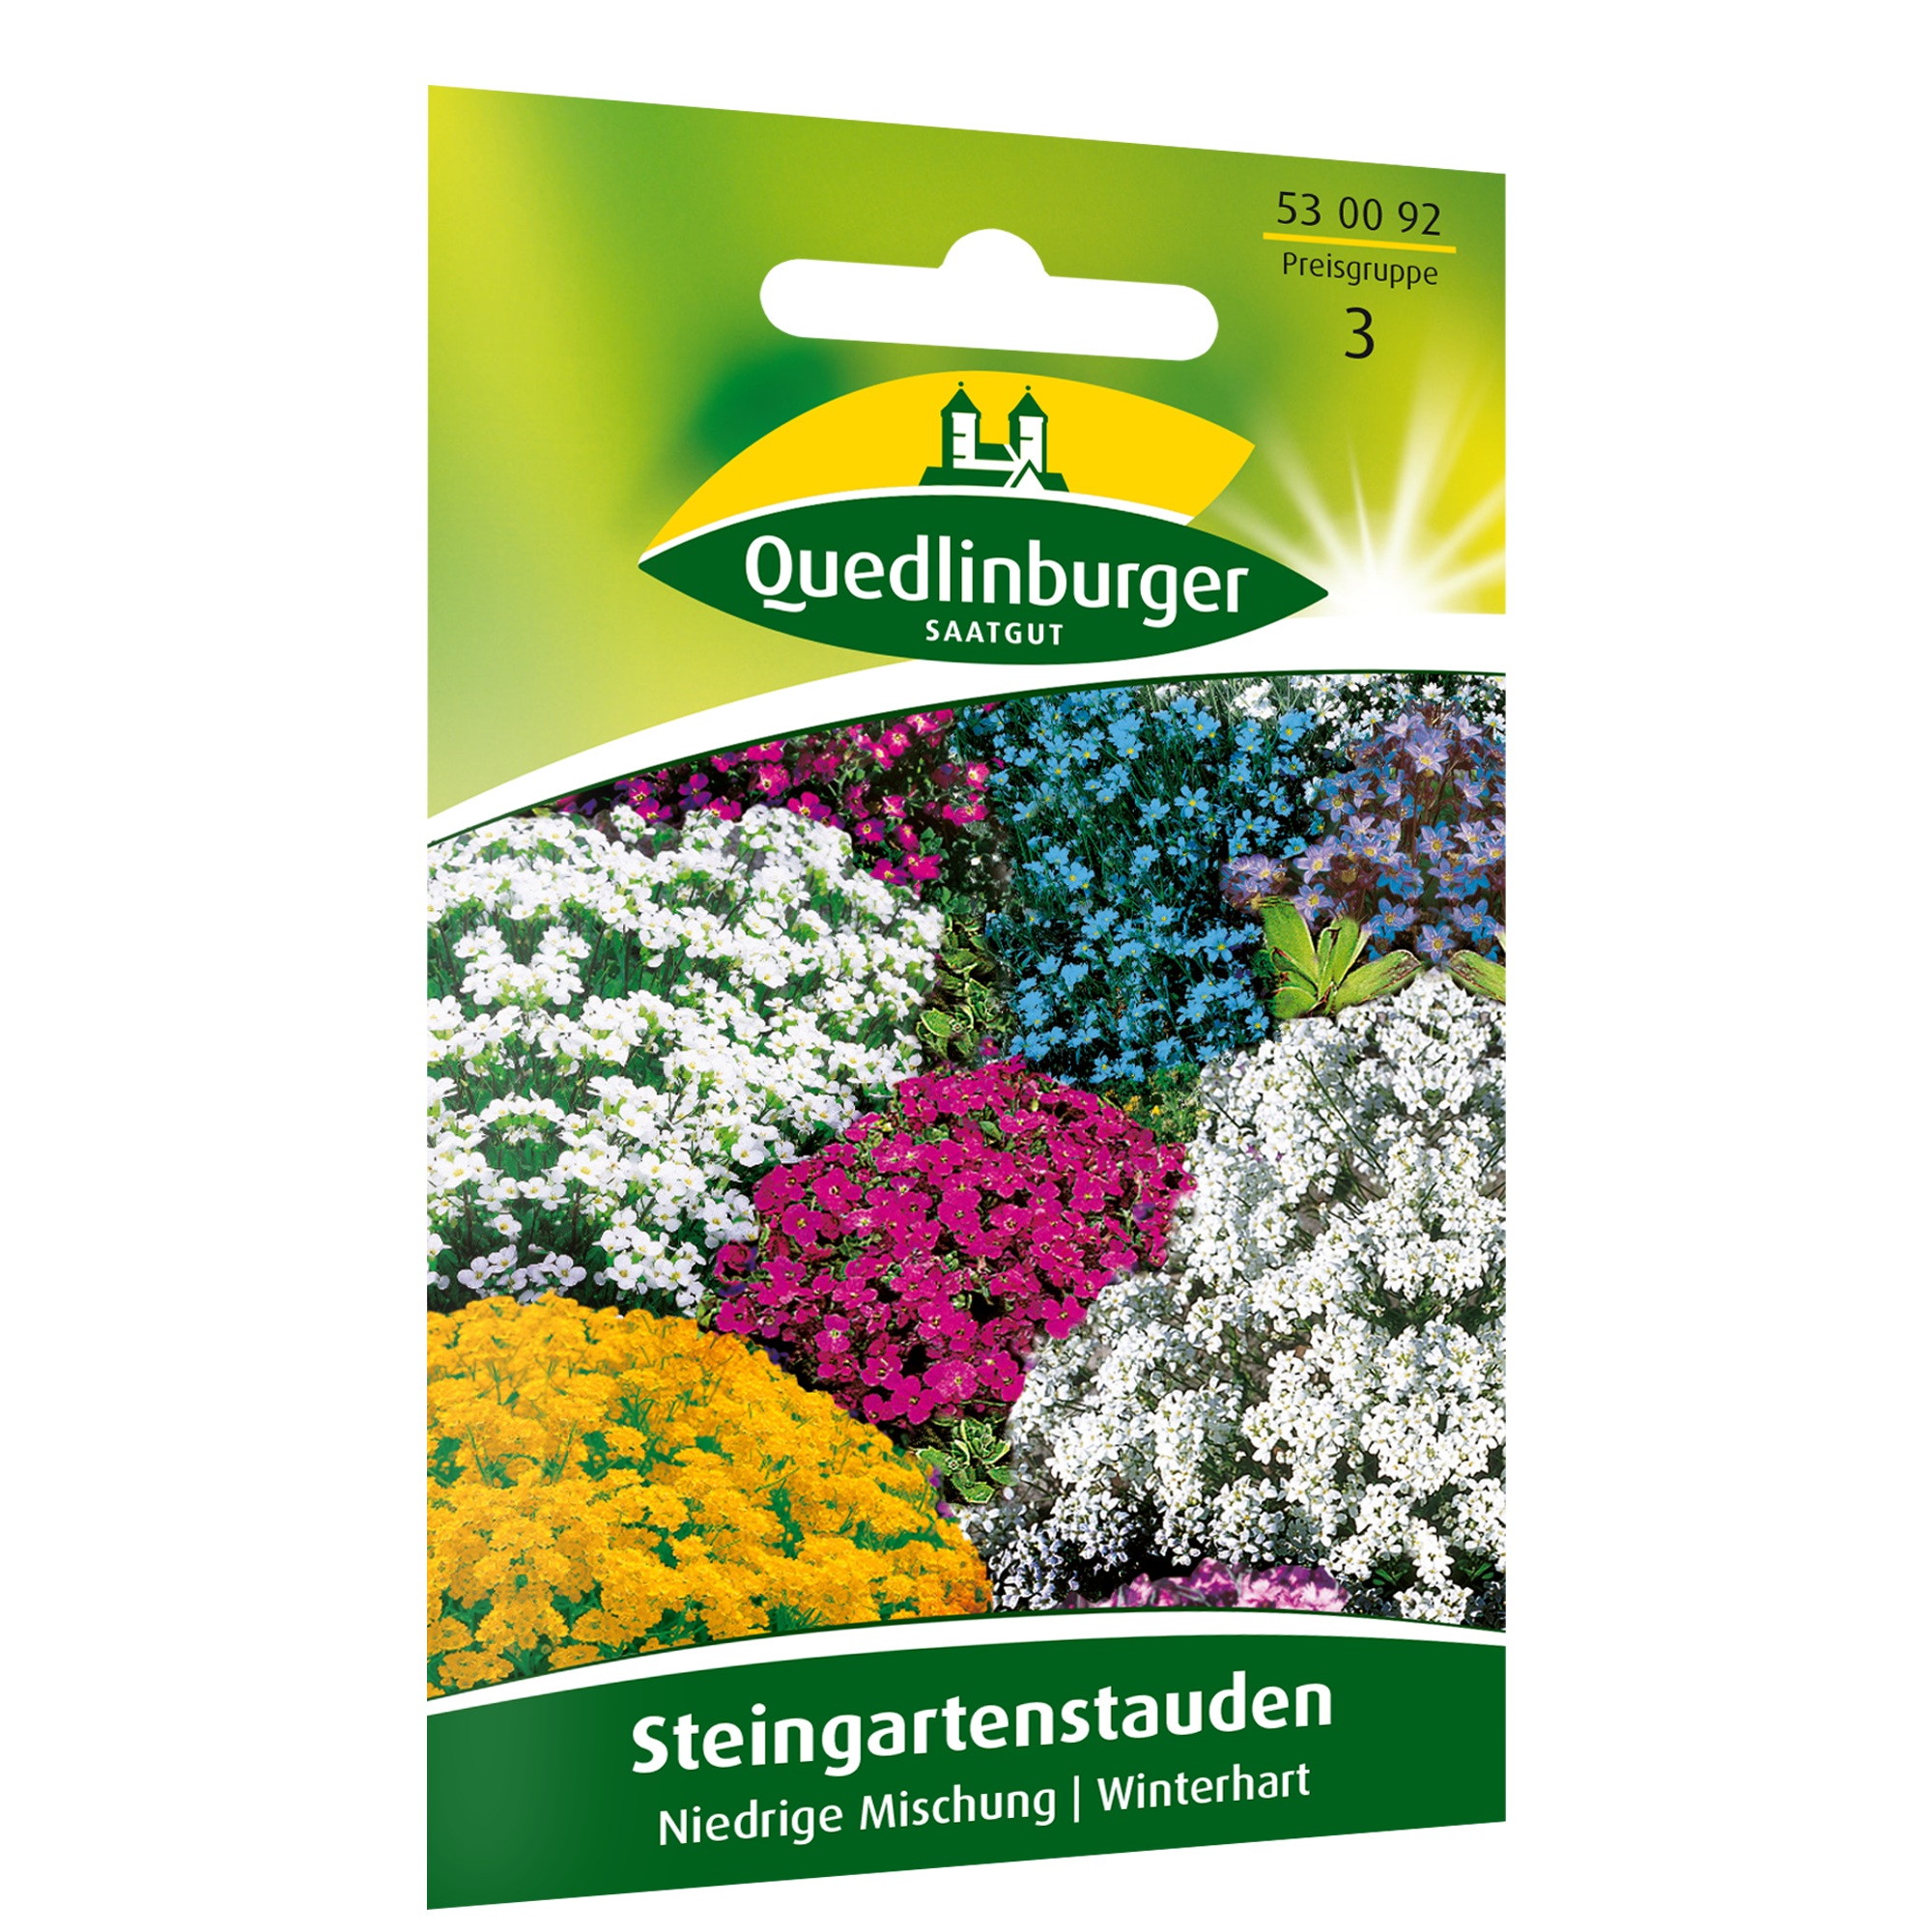 Steingartenstauden niedrig, Mischung + product picture